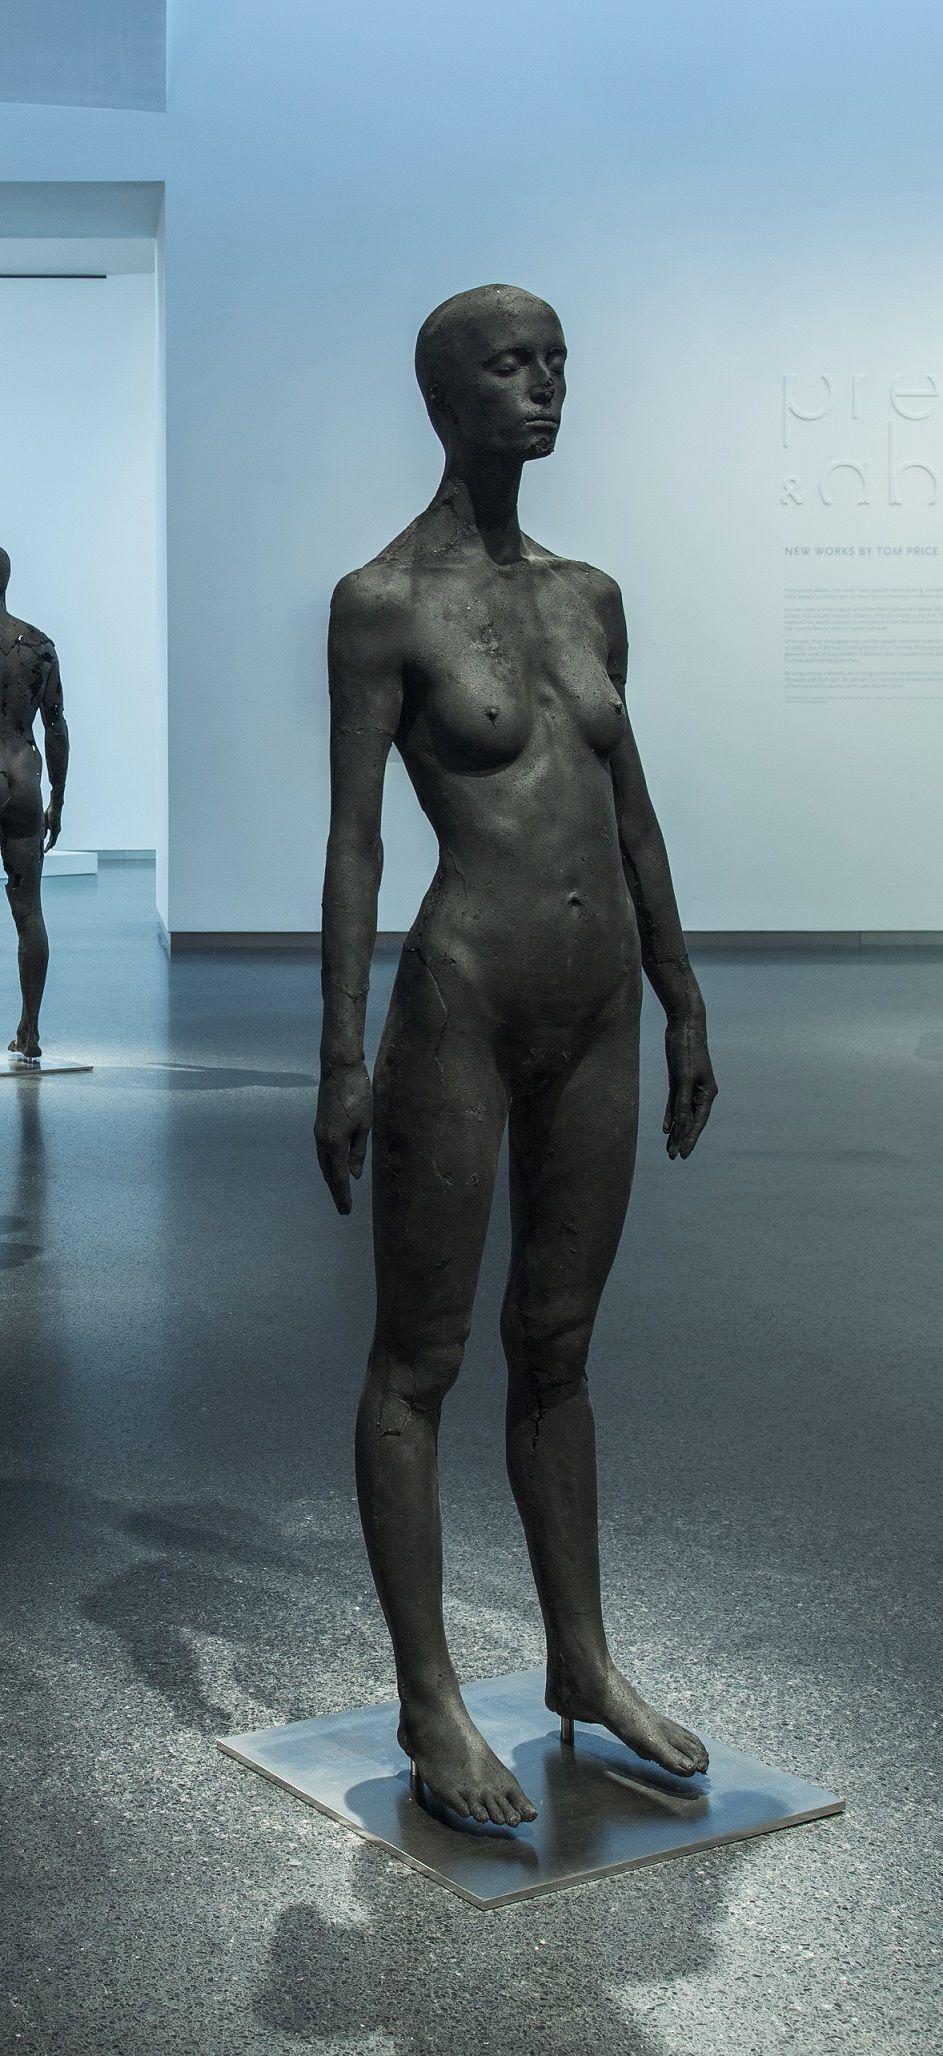 The Presence of Absence - Female (I) est une sculpture unique en charbon, acier inoxydable et résine époxy de l'artiste contemporain Tom Price, dont les dimensions sont de 170 × 50 × 50 cm (66,9 × 19,7 × 19,7 in). 
La sculpture est signée et